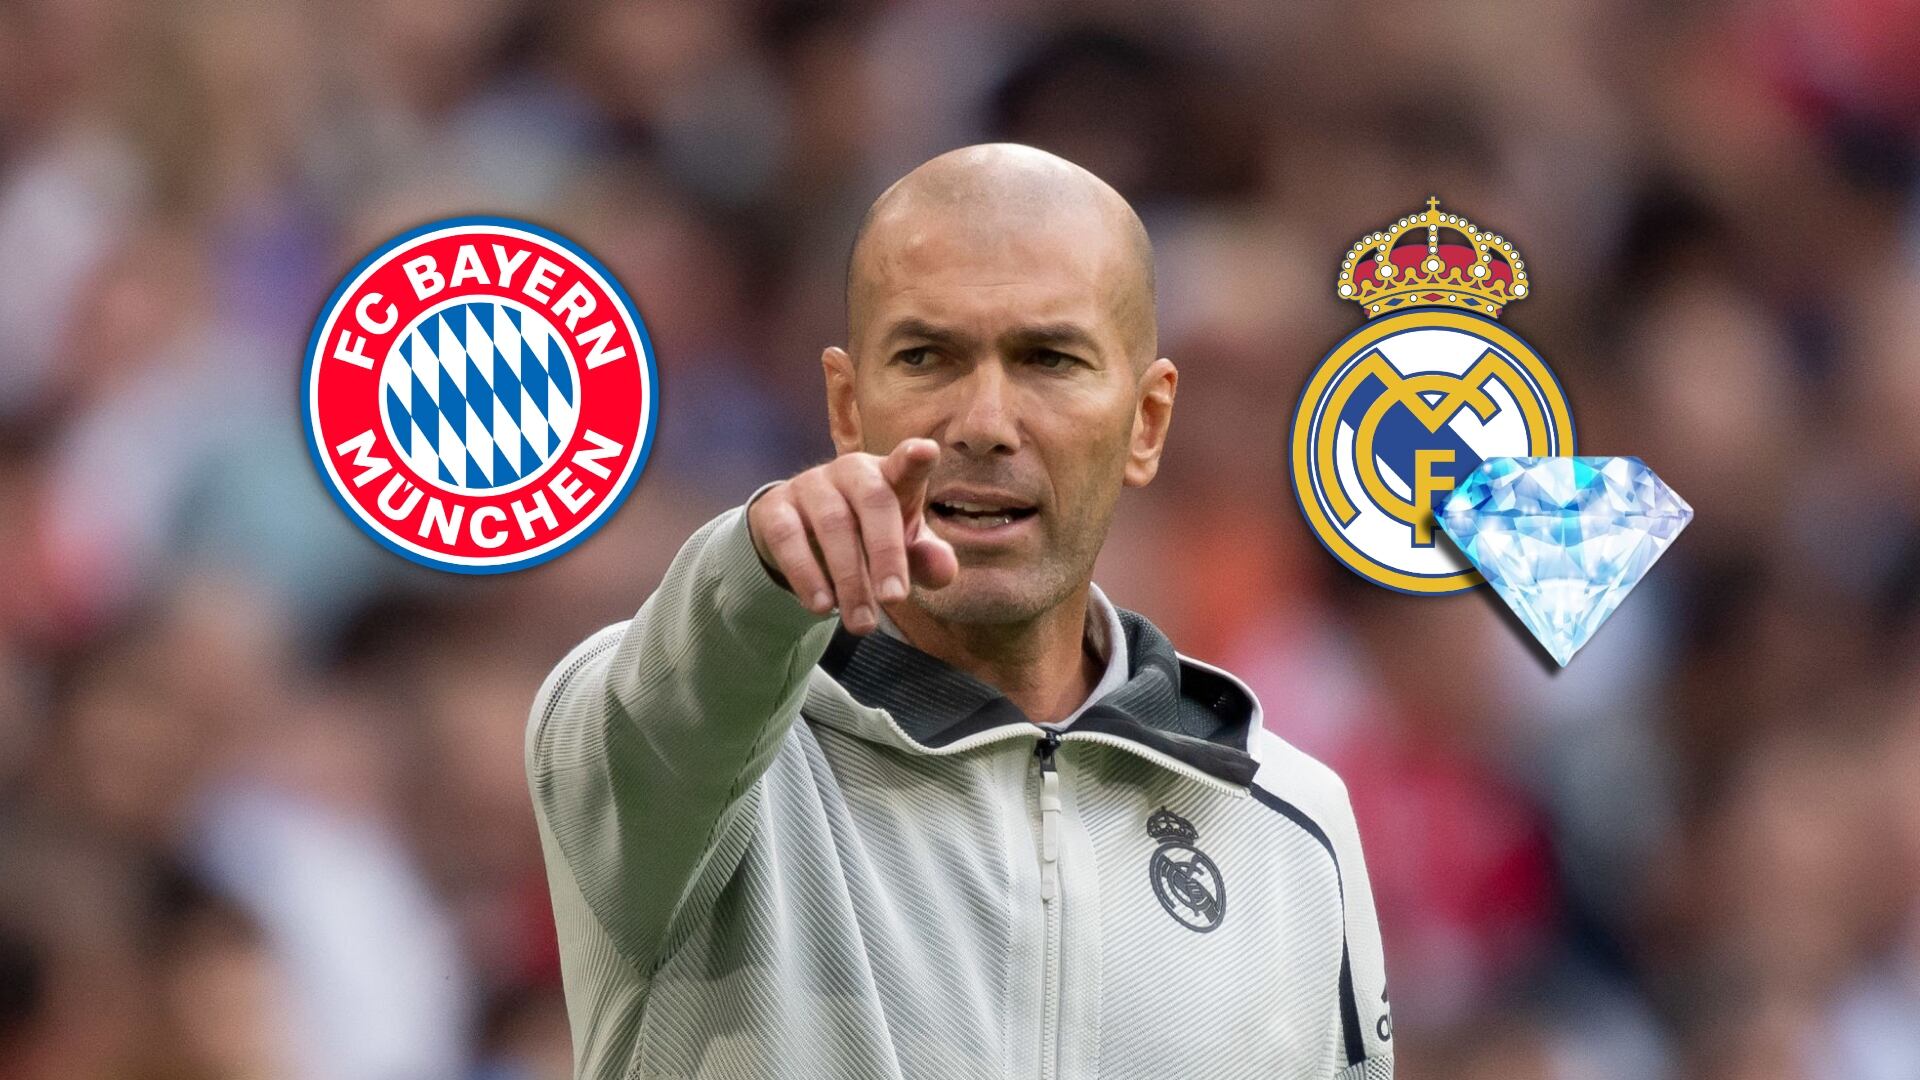 La joya del Real Madrid que Zidane se llevaría a Bayern Múnich, no es Valverde